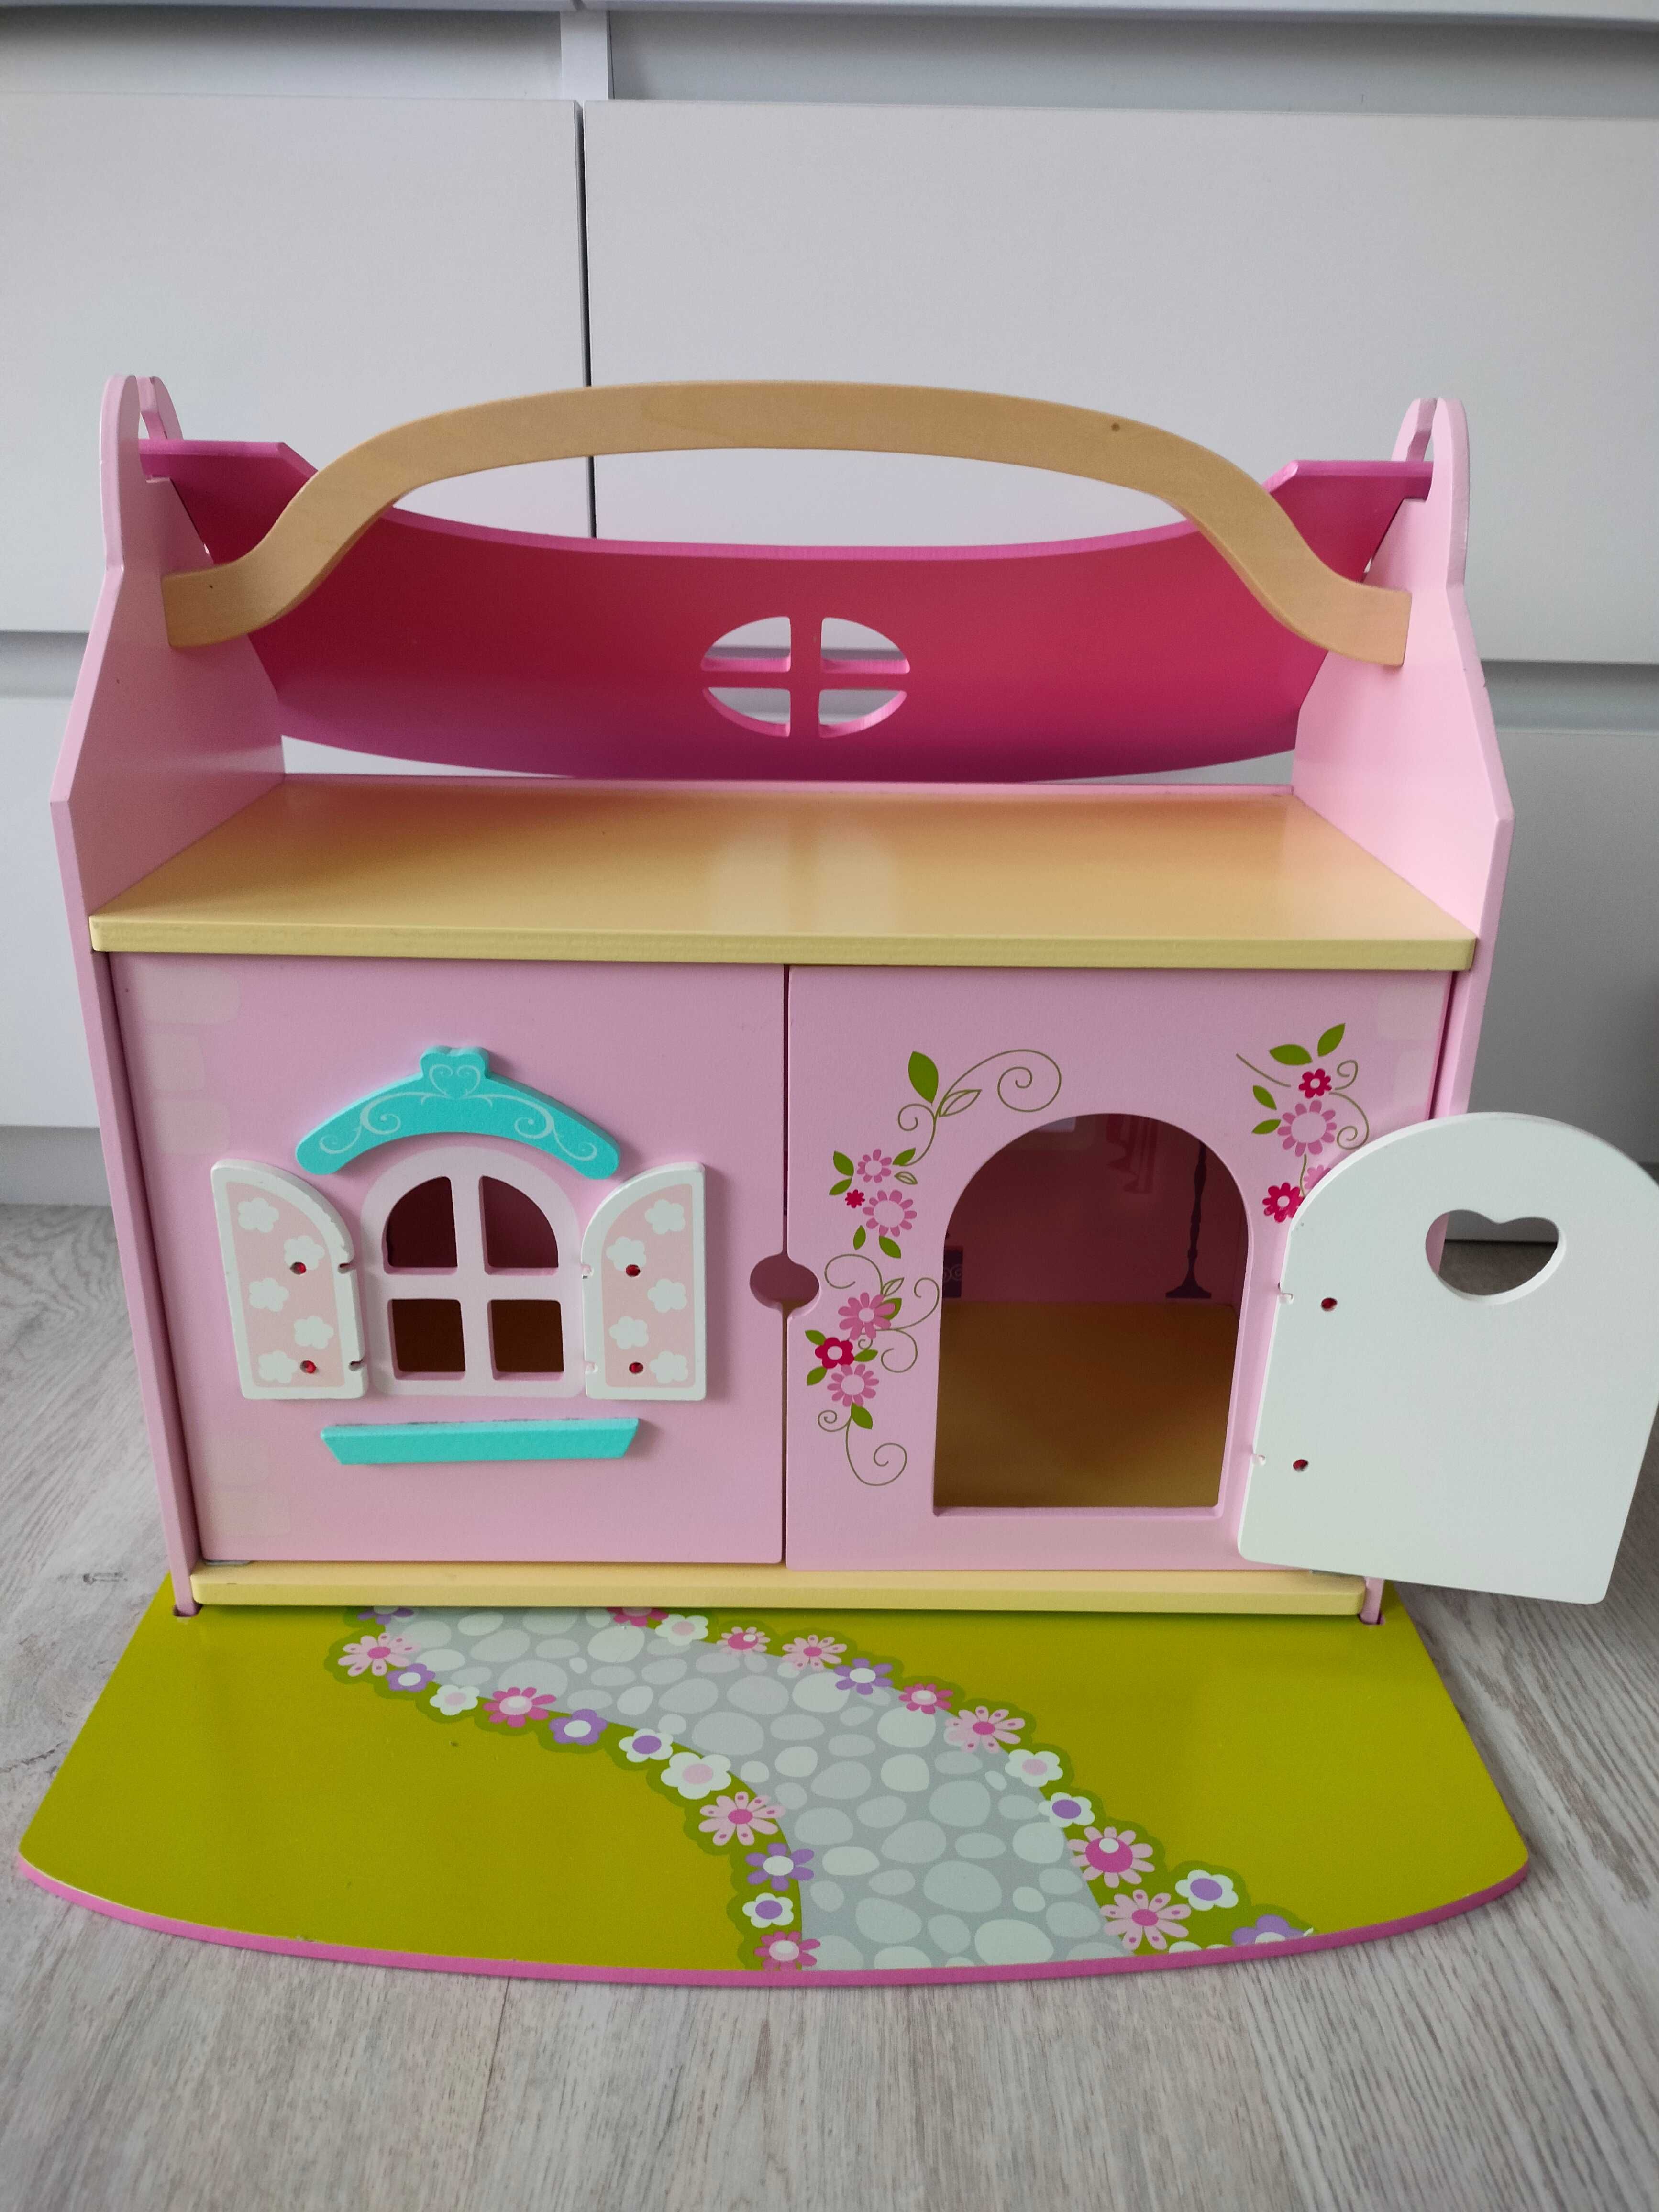 Drewniany domek dla lalek różowy, otwierane drzwi, okiennice, śliczny